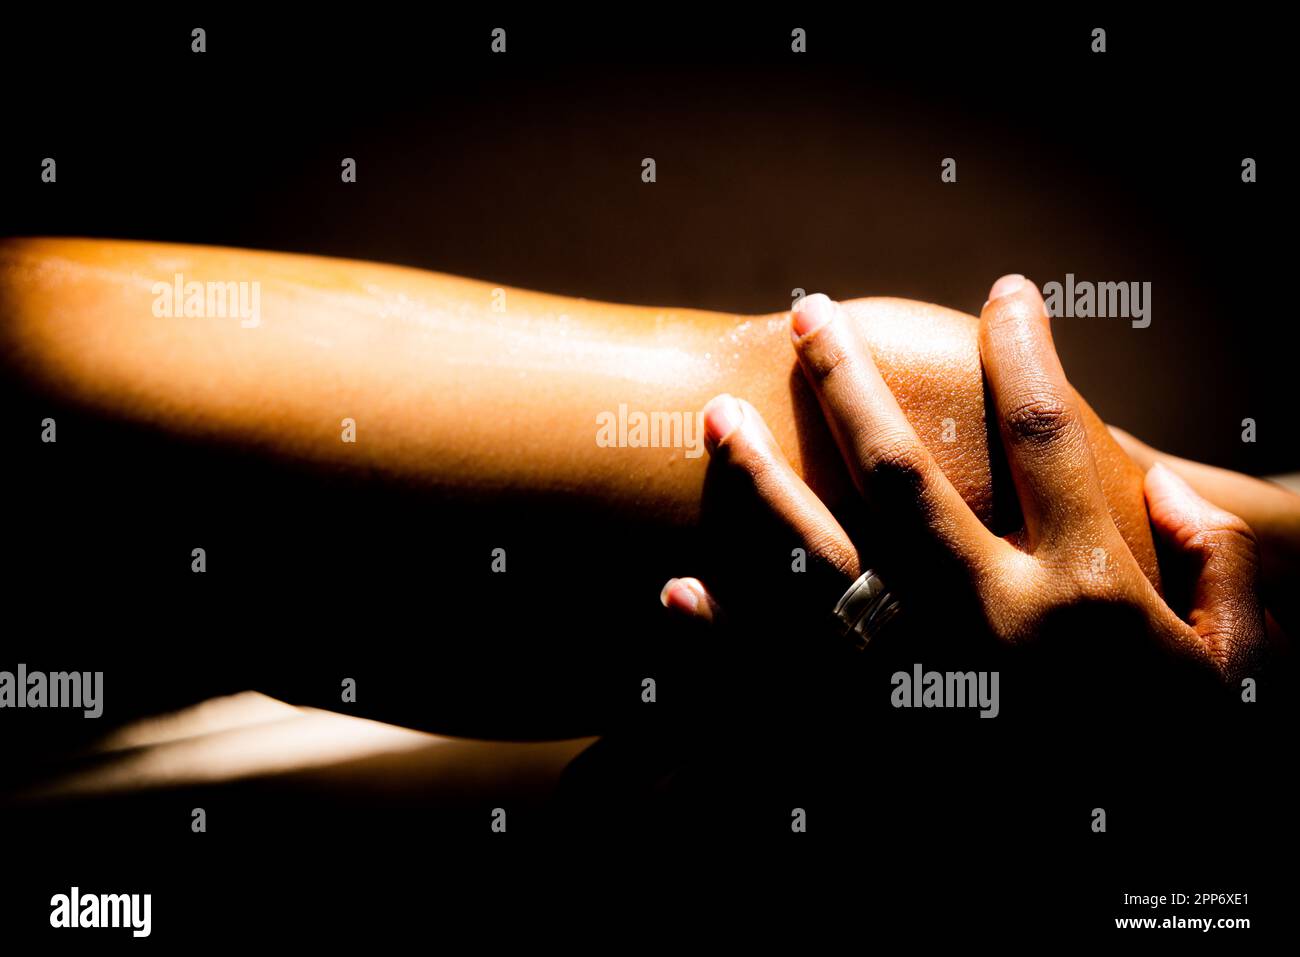 Una donna applica lozione alla gamba. Mentre massaggia delicatamente la lozione nella sua pelle, sente una sensazione lenitiva. Foto Stock